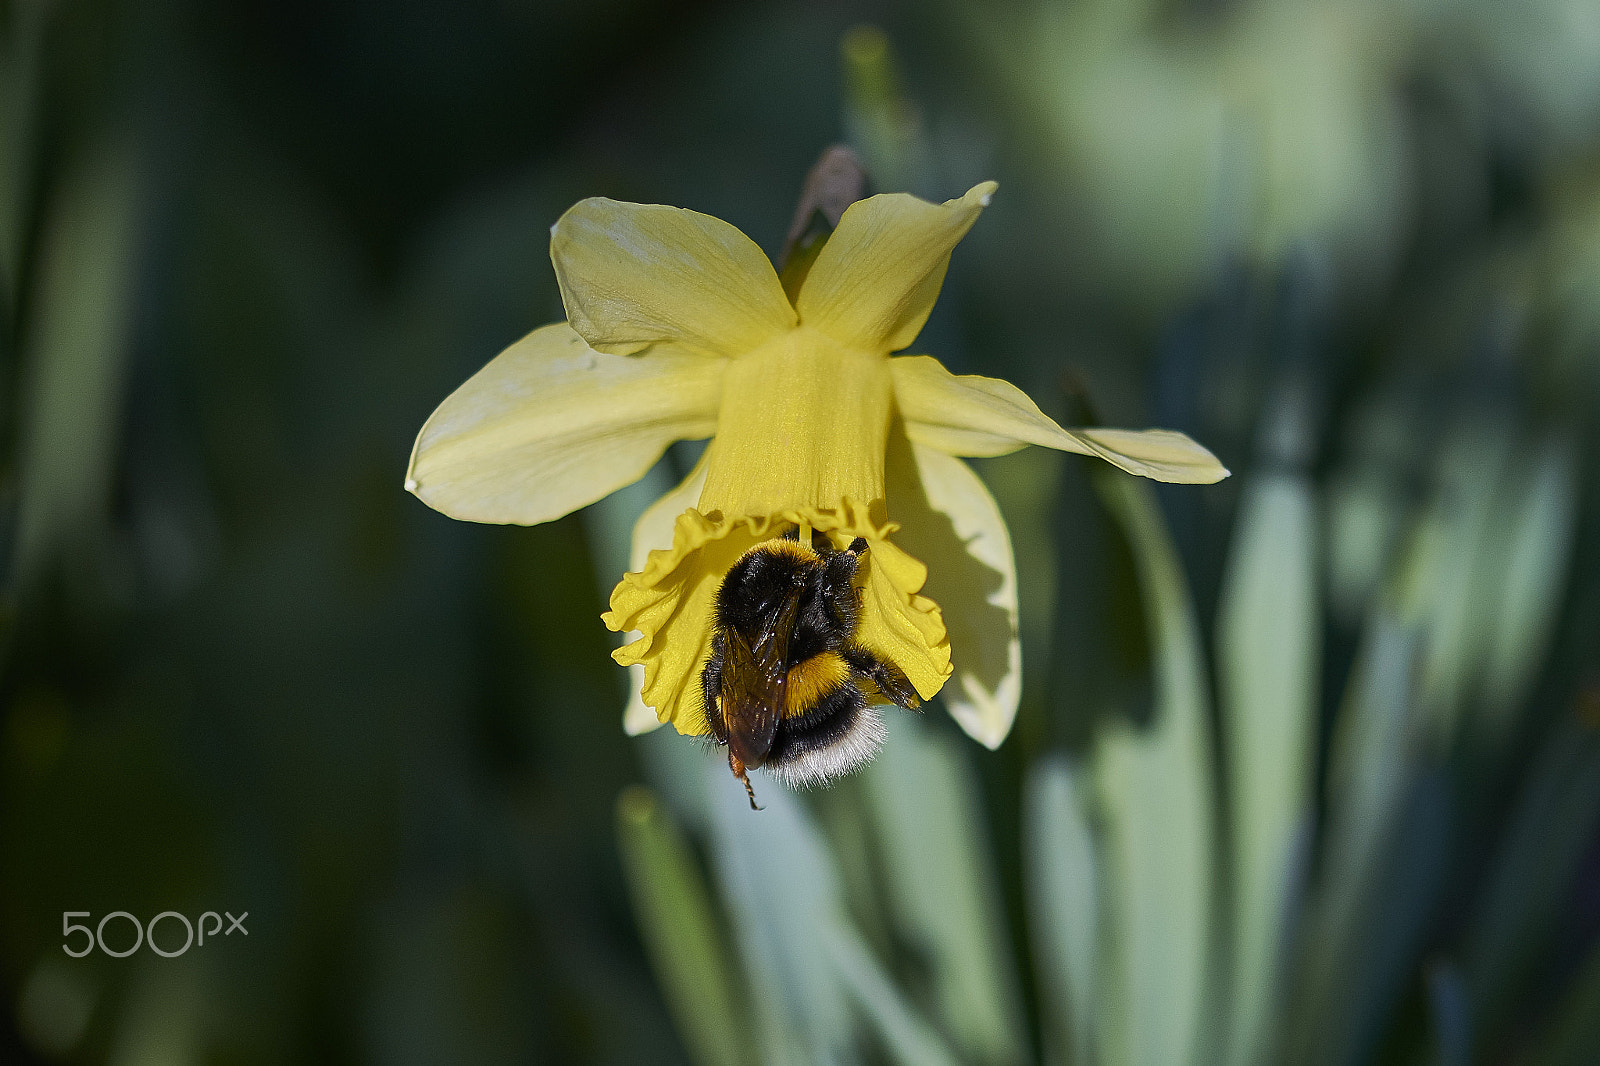 Nikon D5300 sample photo. Bumble bee photography